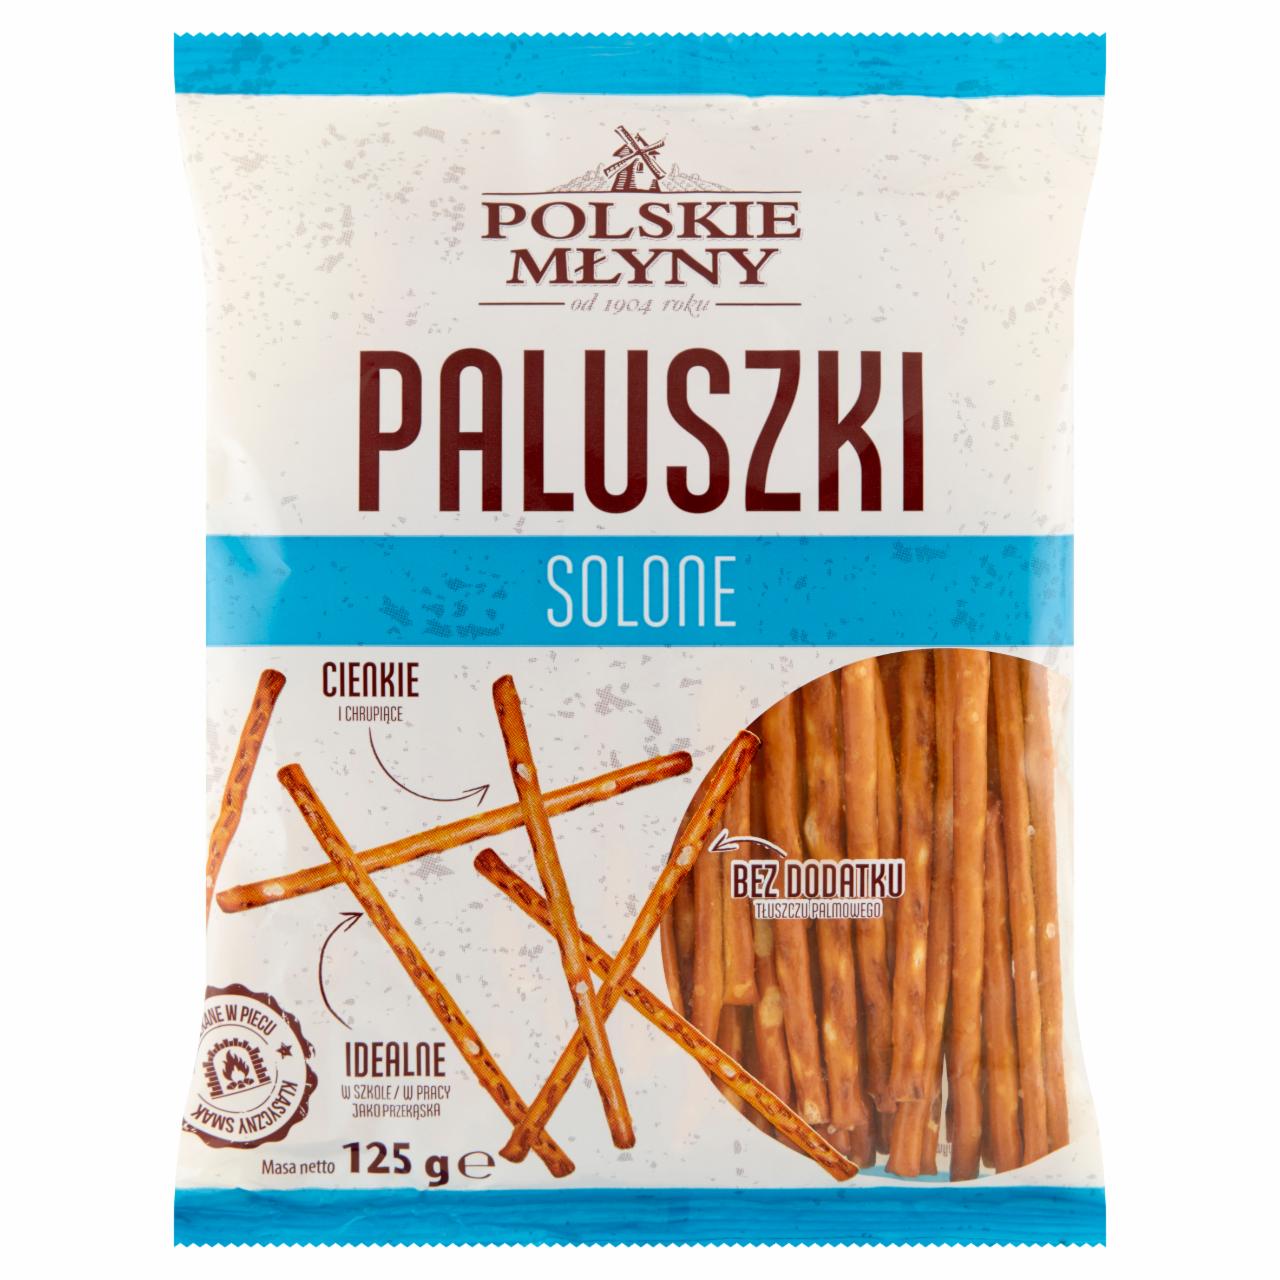 Zdjęcia - Polskie Młyny Paluszki solone 125 g